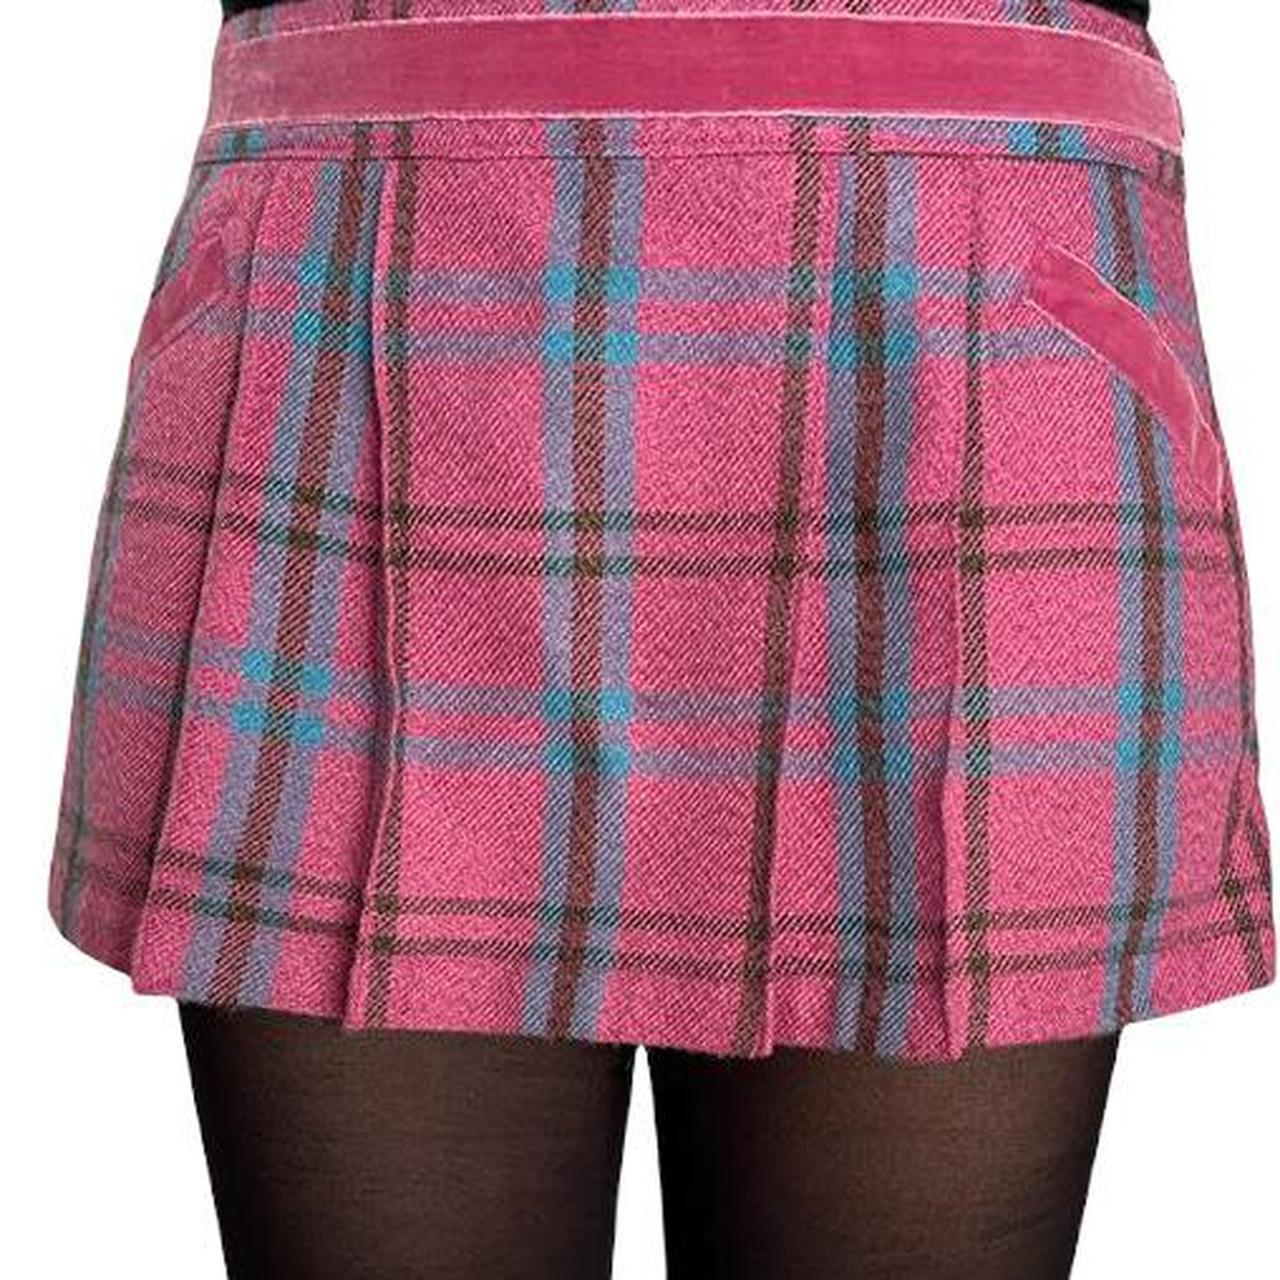 Product Image 1 - Hollister plaid mini skirt
Vintage pink